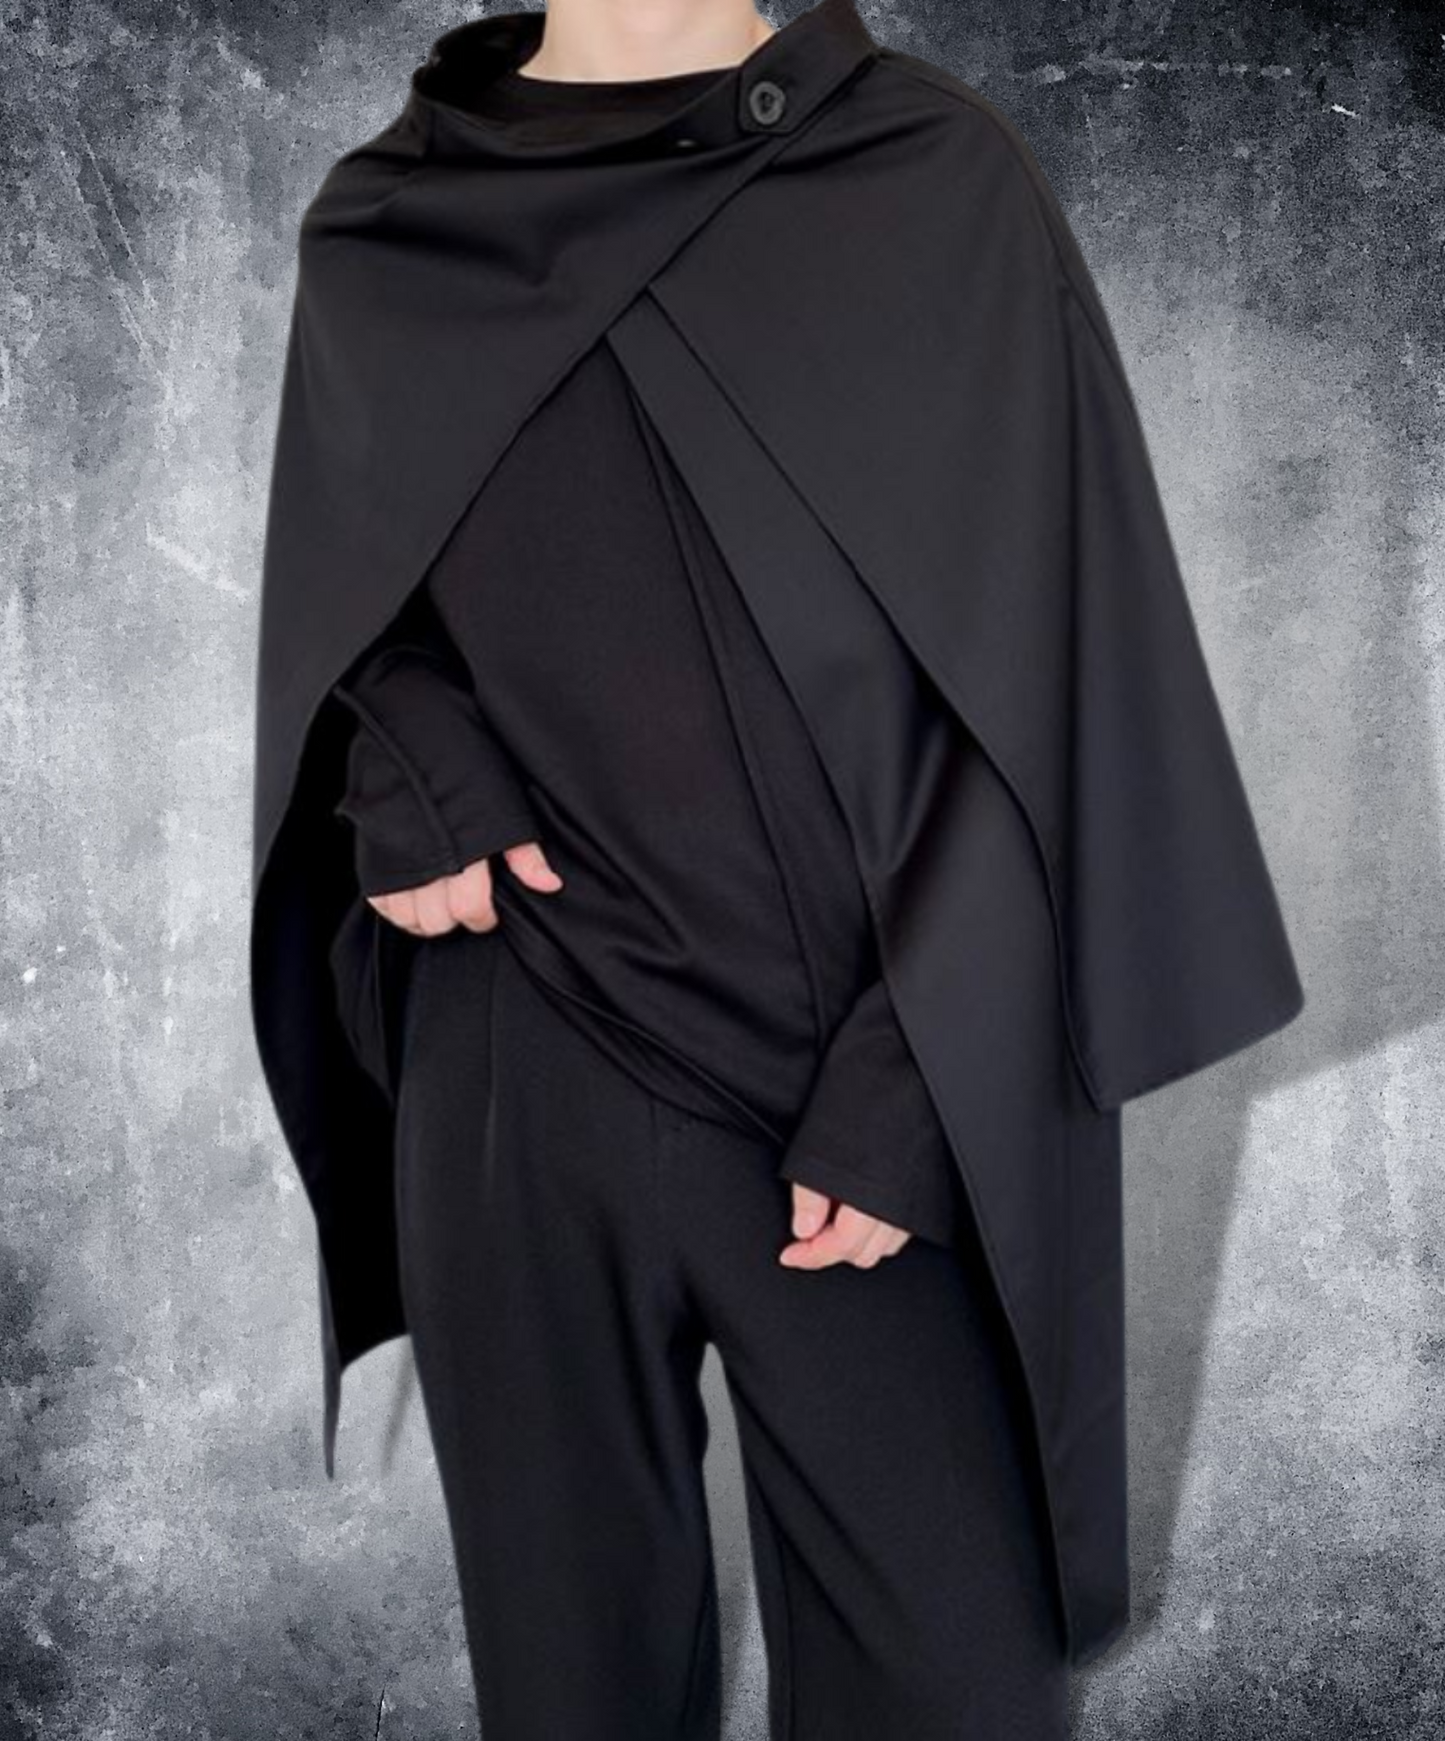 dark cloak skirt EN945